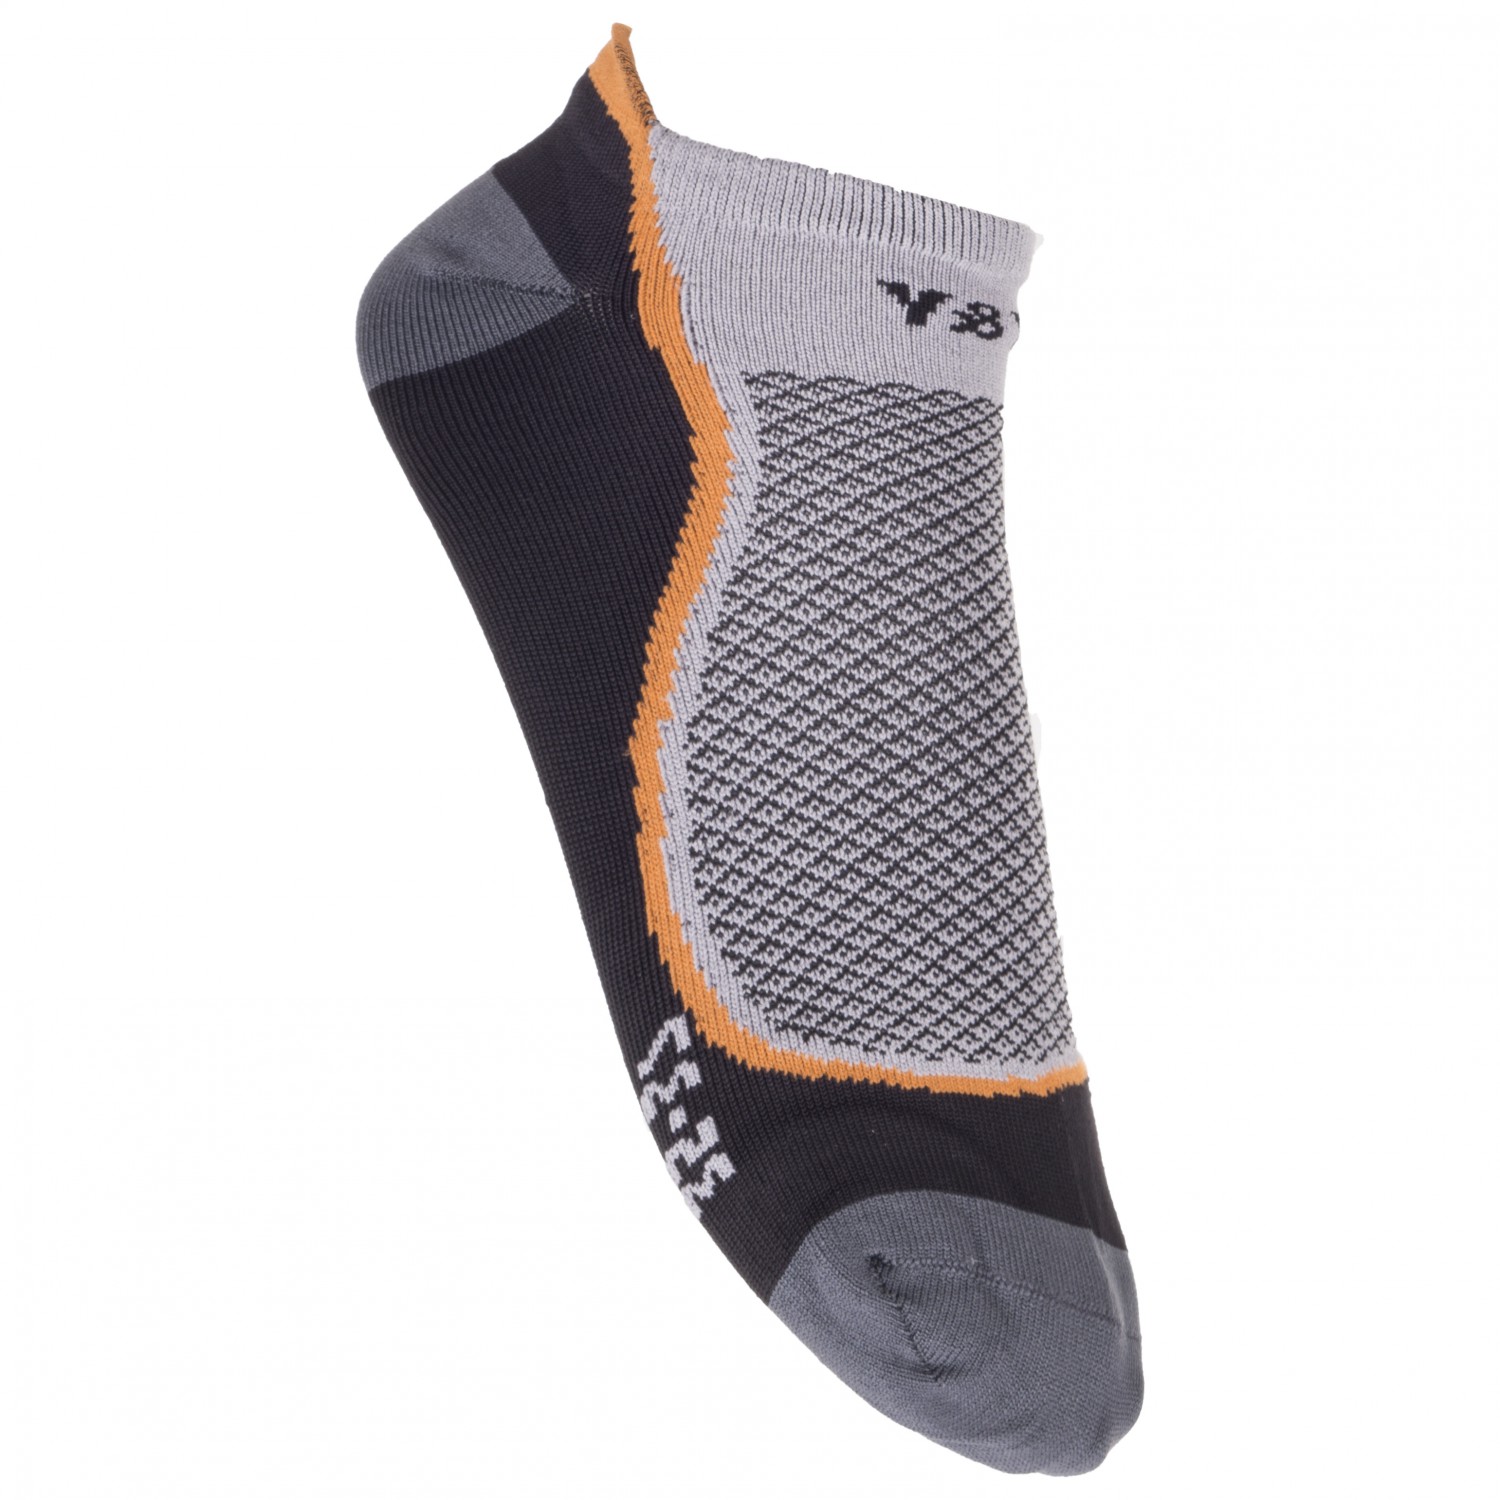 Многофункциональные носки Yy Vertical Climbing Socks, цвет Black/Grey/Orange